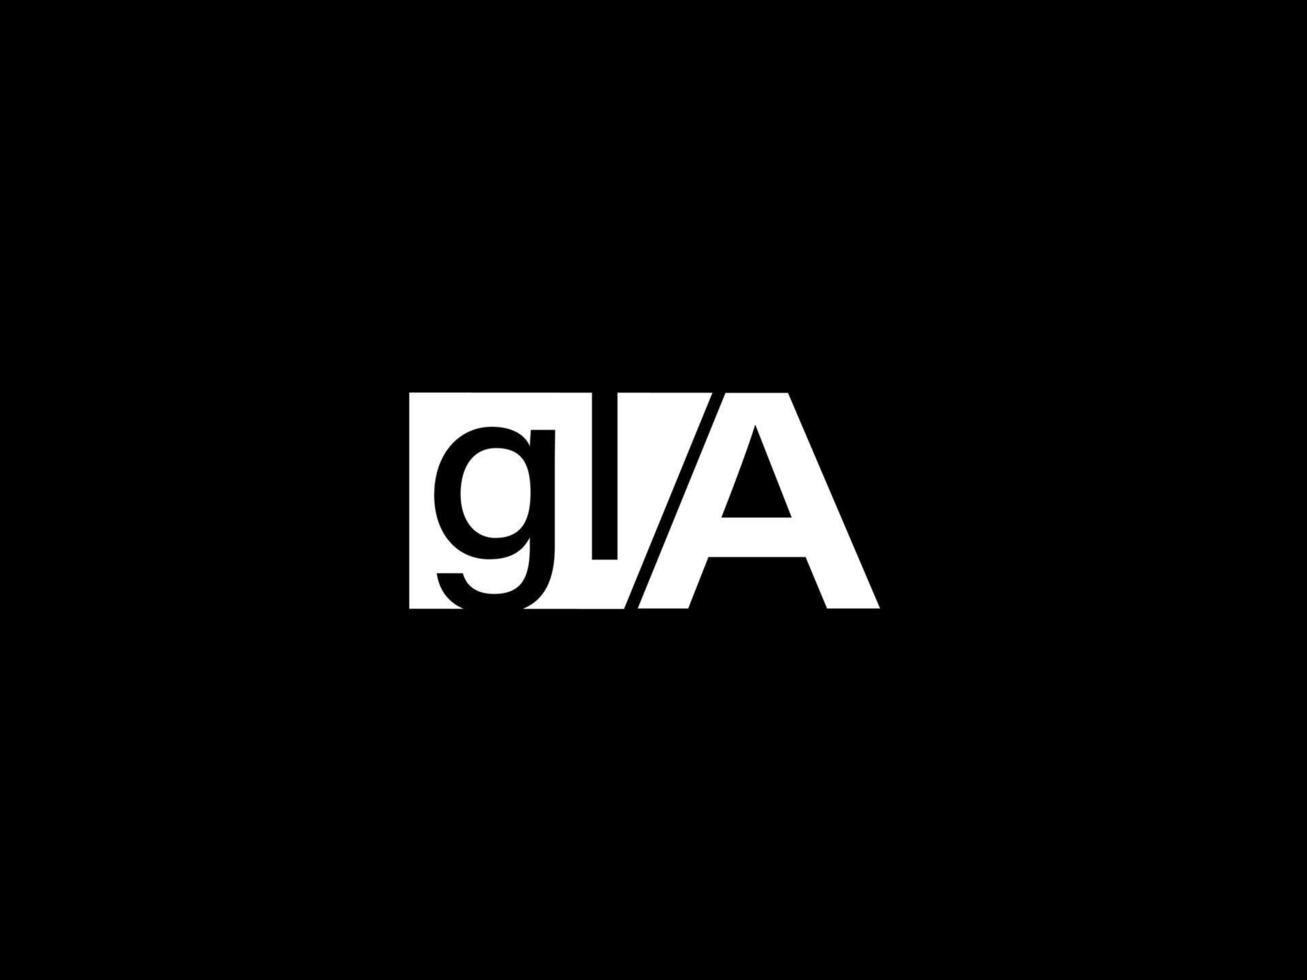 gla logotipo e design gráfico arte vetorial, ícones isolados em fundo preto vetor